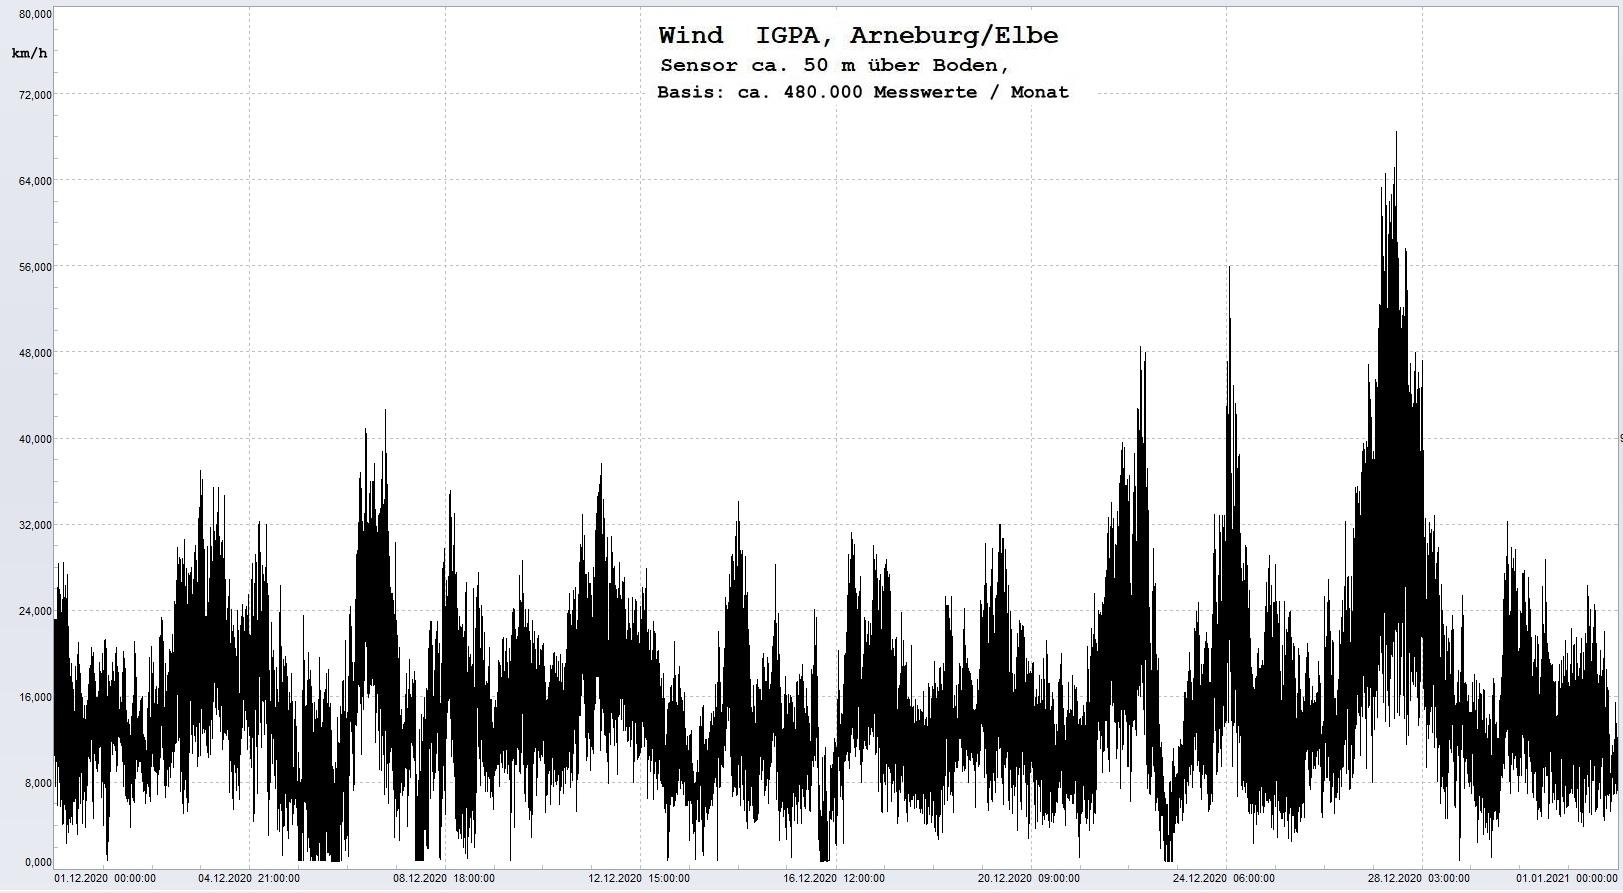 Arneburg Histogramm Winddaten Monat Dezember 2020, 
  Sensor auf Gebude, ca. 50 m ber Erdboden, Basis: 5s-Aufzeichnung